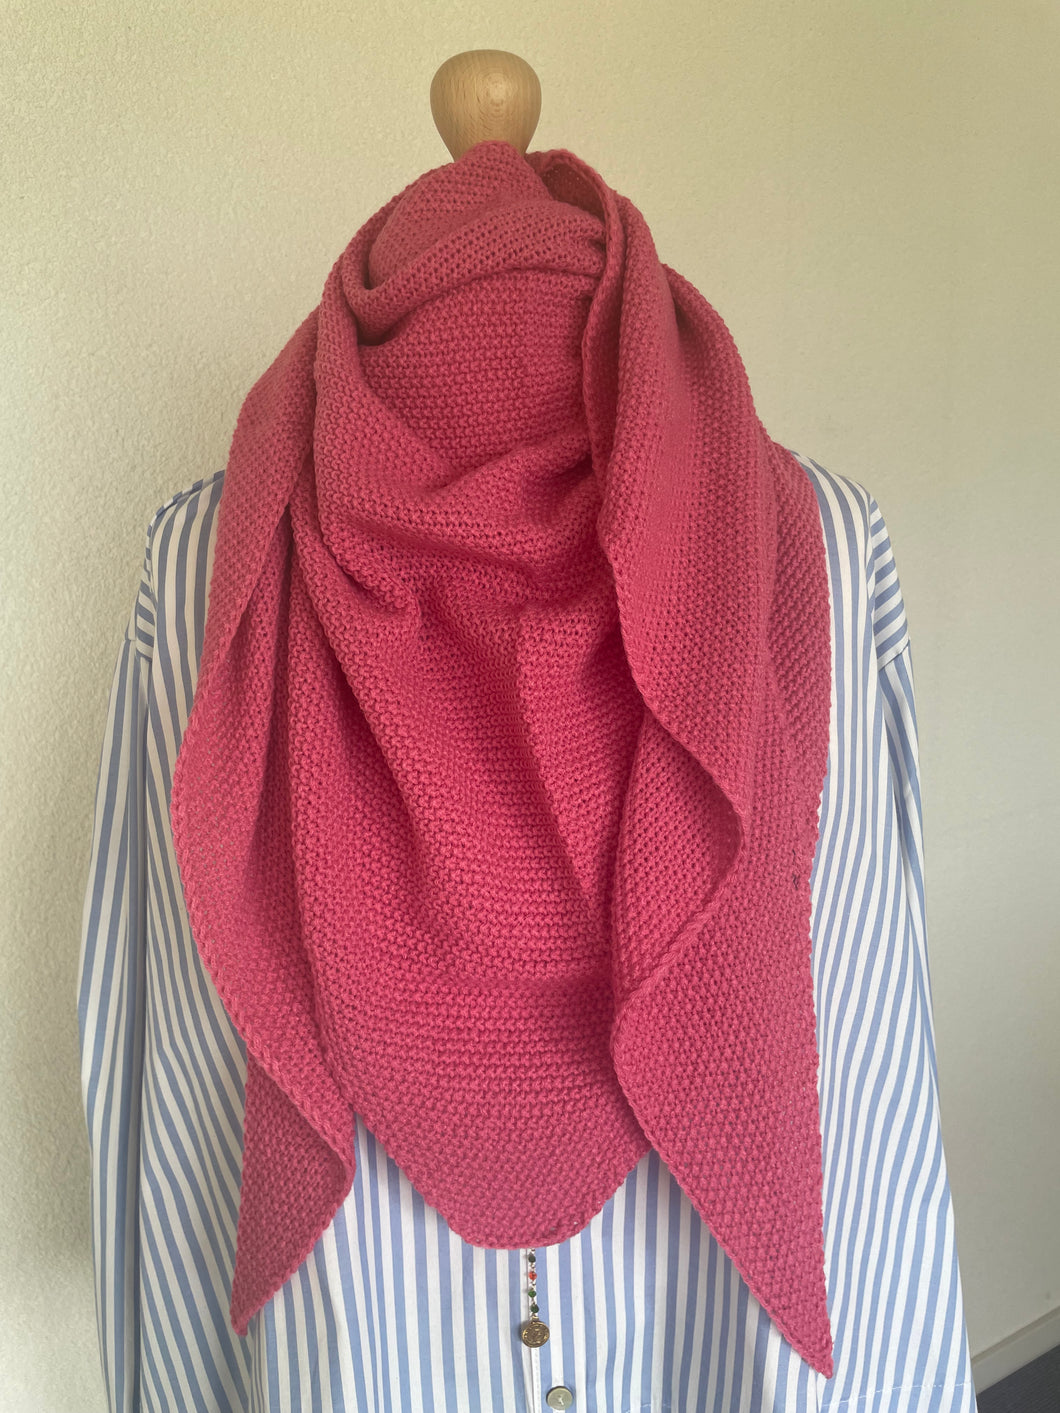 Sjaal Triangle Roze is een kleine gebreide sjaal en kan ook in een punt gedragen worden. Deze sjaal is verkrijgbaar in verschillende kleuren: Blauw, Camel, Fluo groen, Fluo oranje, Roze.  Met deze sjaal maak je jouw outfit af, sjaal is het gehele seizoen door te dragen. 